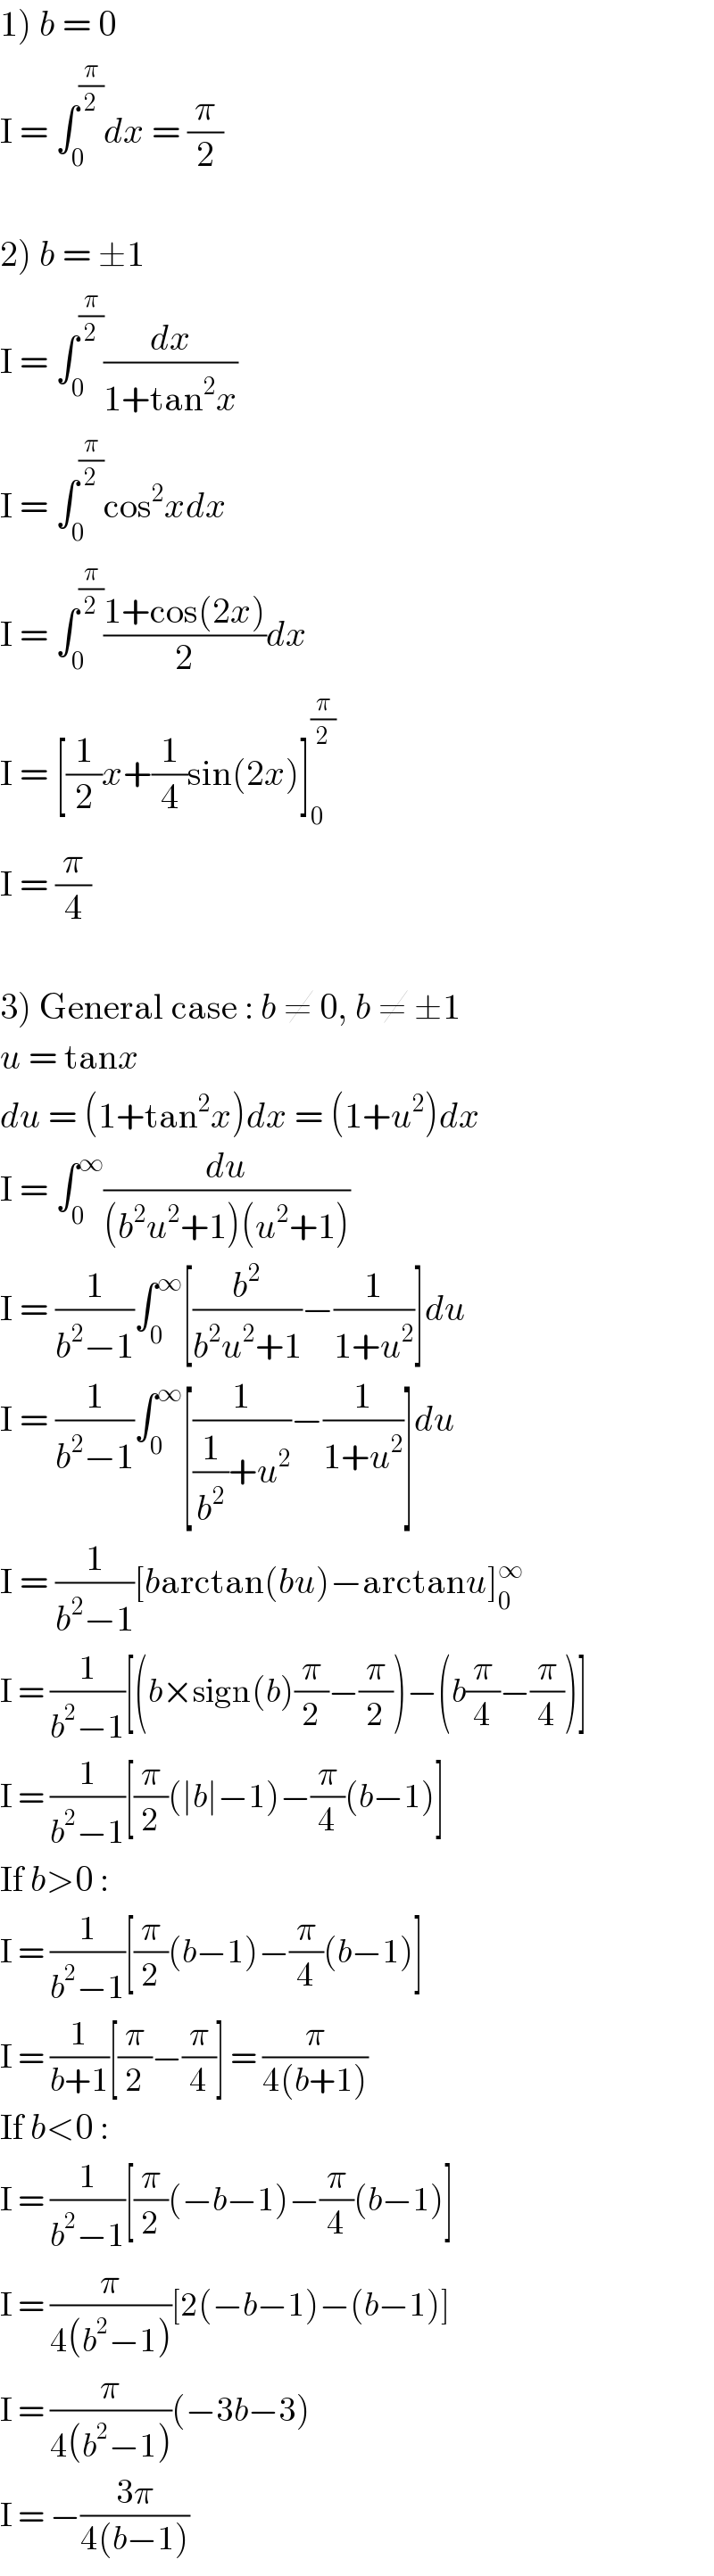 1) b = 0  I = ∫_0 ^(π/2) dx = (π/2)    2) b = ±1  I = ∫_0 ^(π/2) (dx/(1+tan^2 x))  I = ∫_0 ^(π/2) cos^2 xdx  I = ∫_0 ^(π/2) ((1+cos(2x))/2)dx  I = [(1/2)x+(1/4)sin(2x)]_0 ^(π/2)   I = (π/4)    3) General case : b ≠ 0, b ≠ ±1  u = tanx  du = (1+tan^2 x)dx = (1+u^2 )dx  I = ∫_0 ^∞ (du/((b^2 u^2 +1)(u^2 +1)))  I = (1/(b^2 −1))∫_0 ^∞ [(b^2 /(b^2 u^2 +1))−(1/(1+u^2 ))]du  I = (1/(b^2 −1))∫_0 ^∞ [(1/((1/b^2 )+u^2 ))−(1/(1+u^2 ))]du  I = (1/(b^2 −1))[barctan(bu)−arctanu]_0 ^∞   I = (1/(b^2 −1))[(b×sign(b)(π/2)−(π/2))−(b(π/4)−(π/4))]  I = (1/(b^2 −1))[(π/2)(∣b∣−1)−(π/4)(b−1)]  If b>0 :  I = (1/(b^2 −1))[(π/2)(b−1)−(π/4)(b−1)]  I = (1/(b+1))[(π/2)−(π/4)] = (π/(4(b+1)))  If b<0 :  I = (1/(b^2 −1))[(π/2)(−b−1)−(π/4)(b−1)]  I = (π/(4(b^2 −1)))[2(−b−1)−(b−1)]  I = (π/(4(b^2 −1)))(−3b−3)  I = −((3π)/(4(b−1)))  